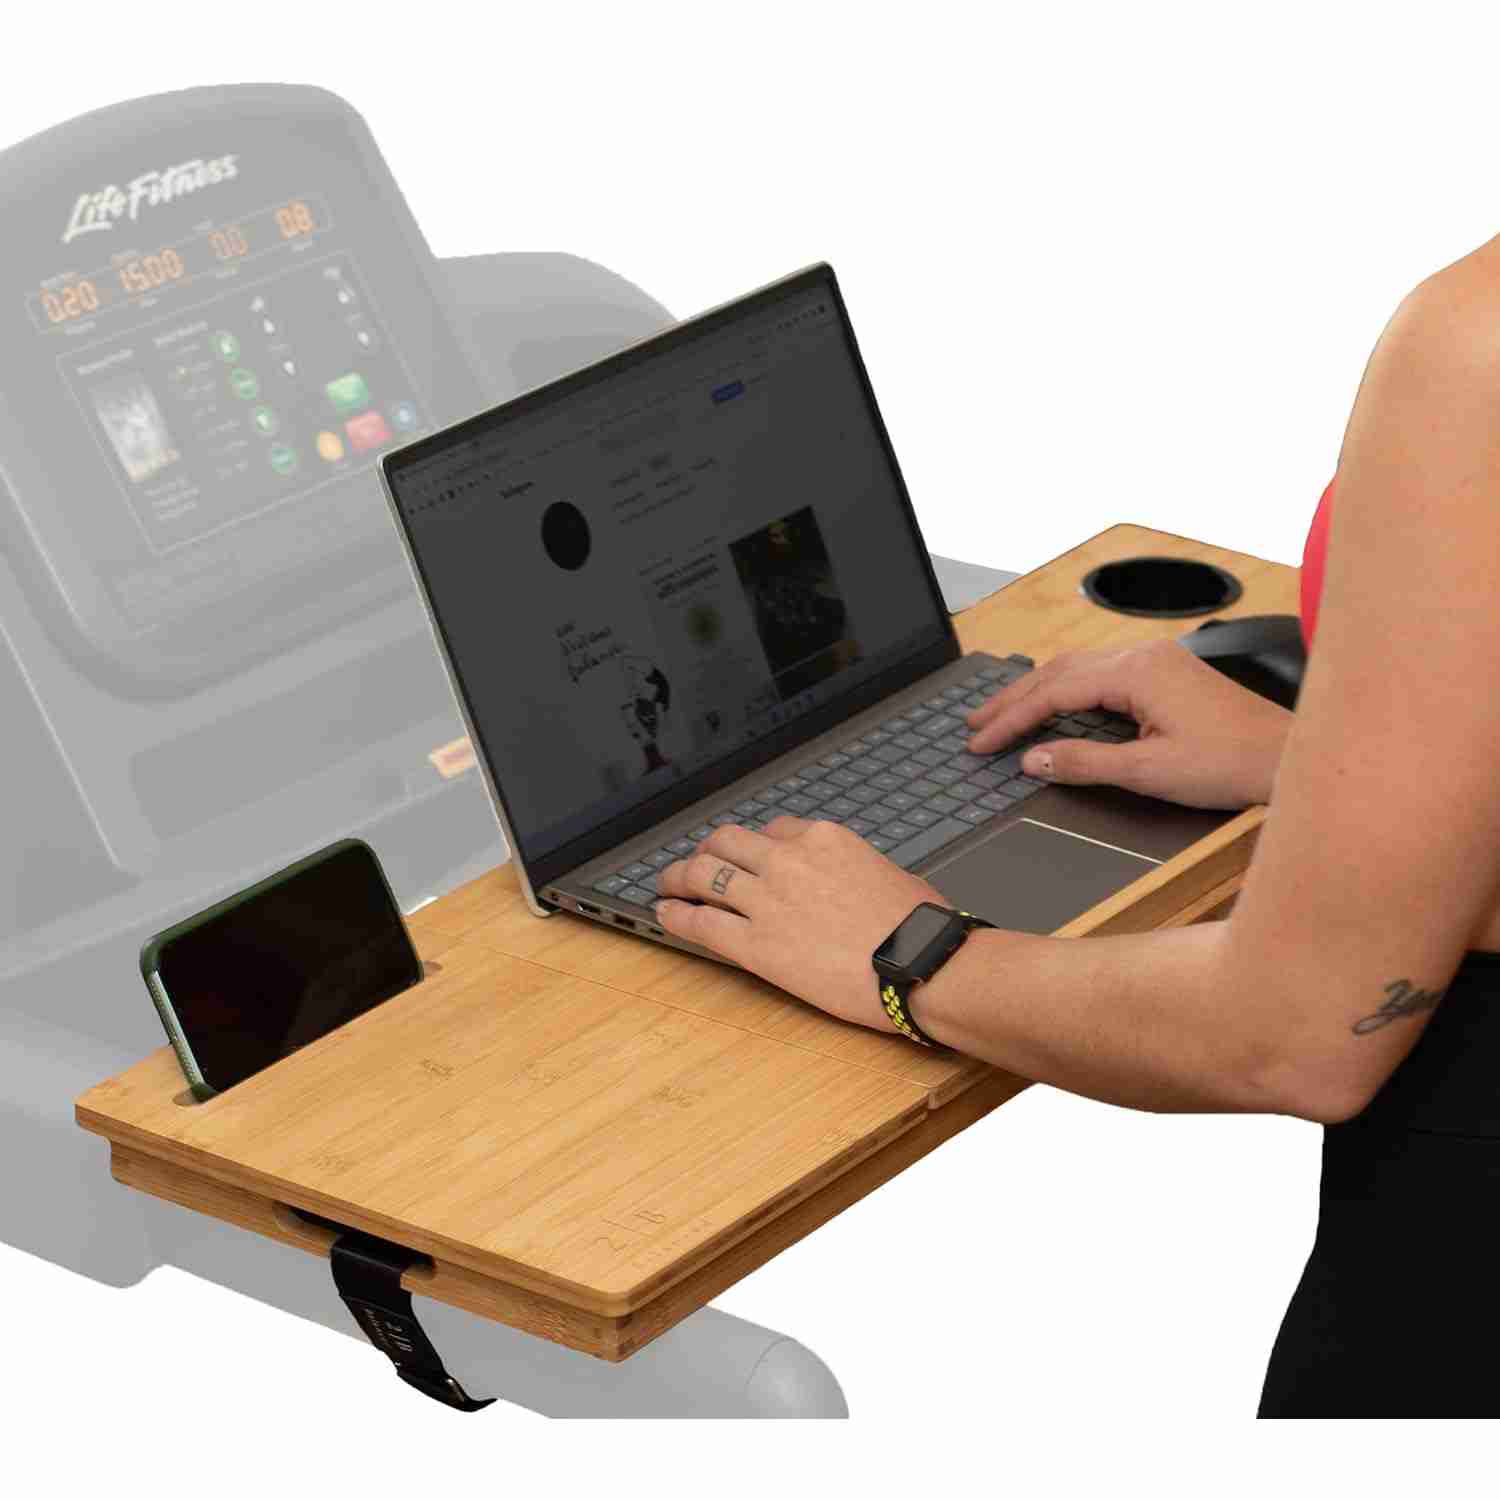 treadmill-desk-attachment with cash back rebate